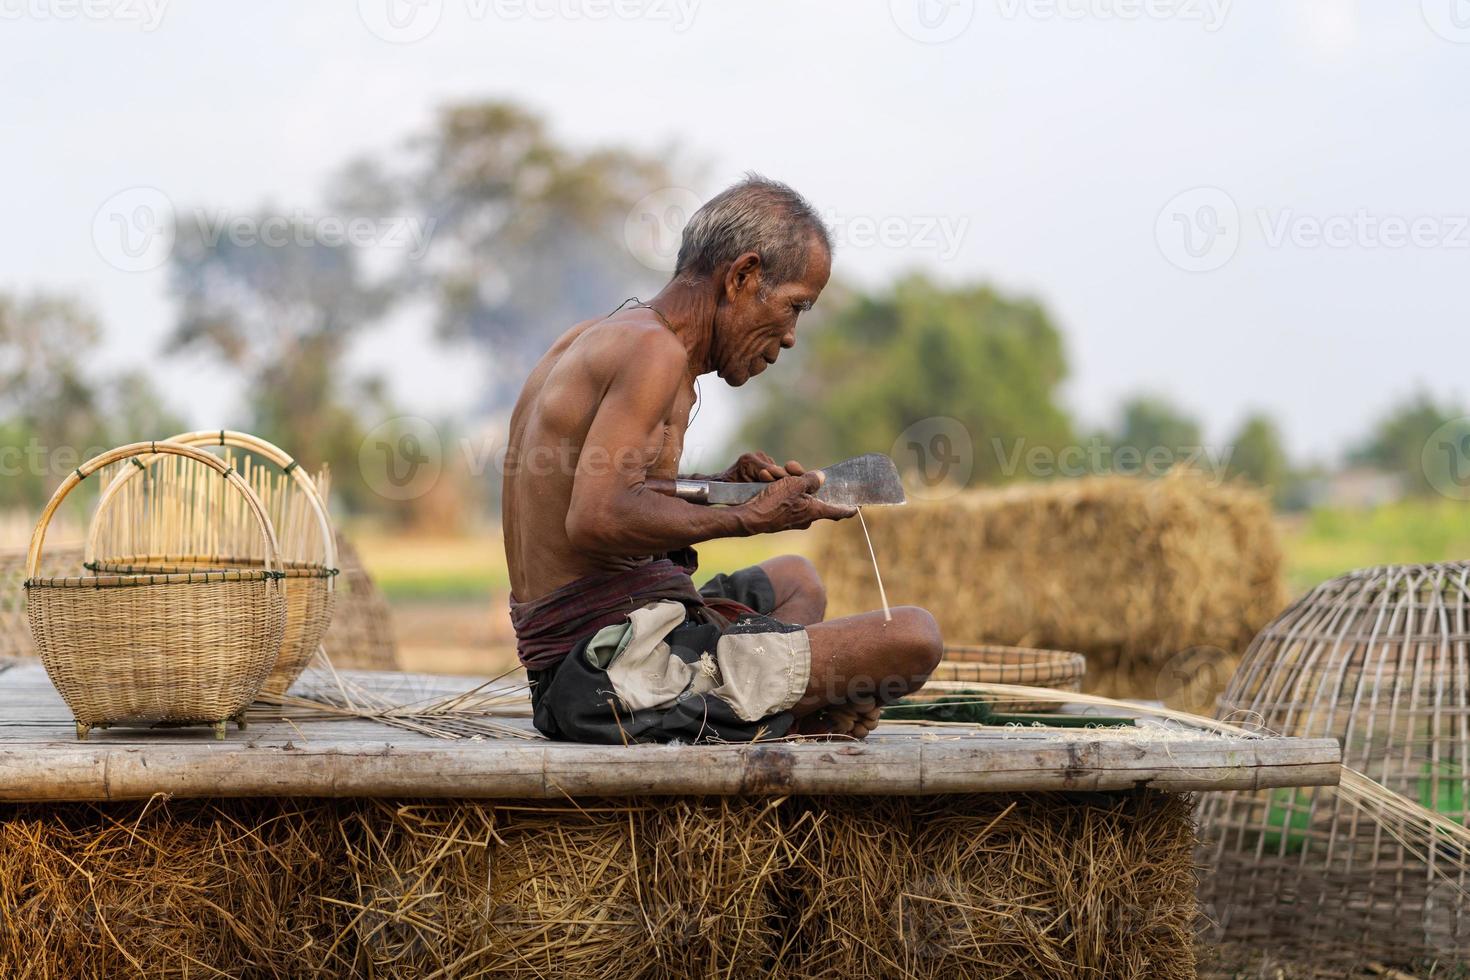 älterer Mann und Bambushandwerk, Lebensstil der Einheimischen in Thailand foto